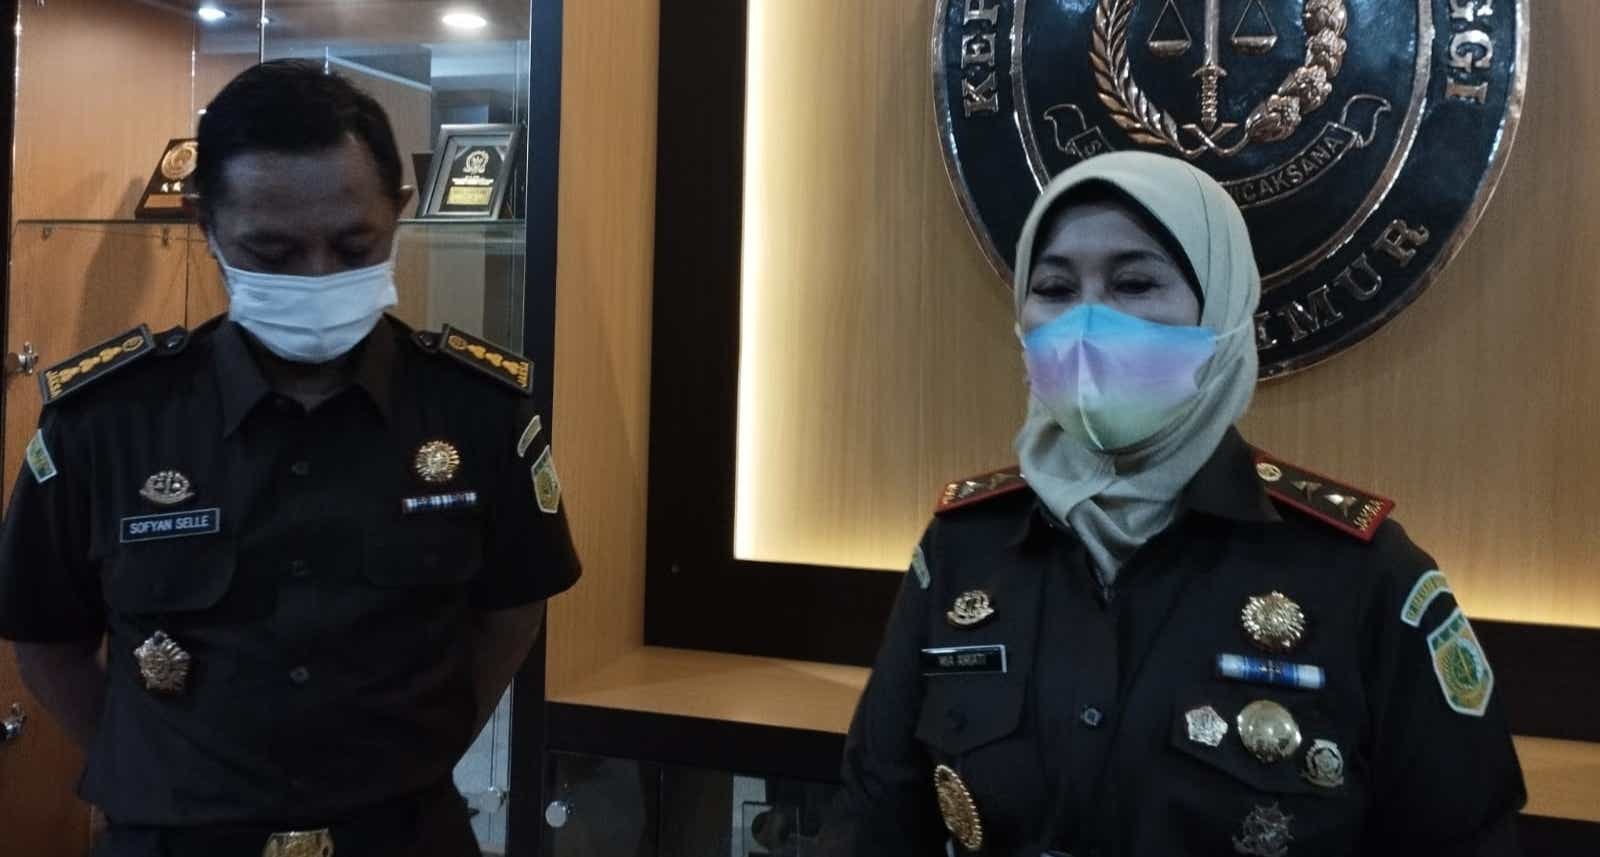 Cabuli Bocah Laki-laki di Jombang, Pejabat Kejari Bojonegoro Ditangkap Polisi